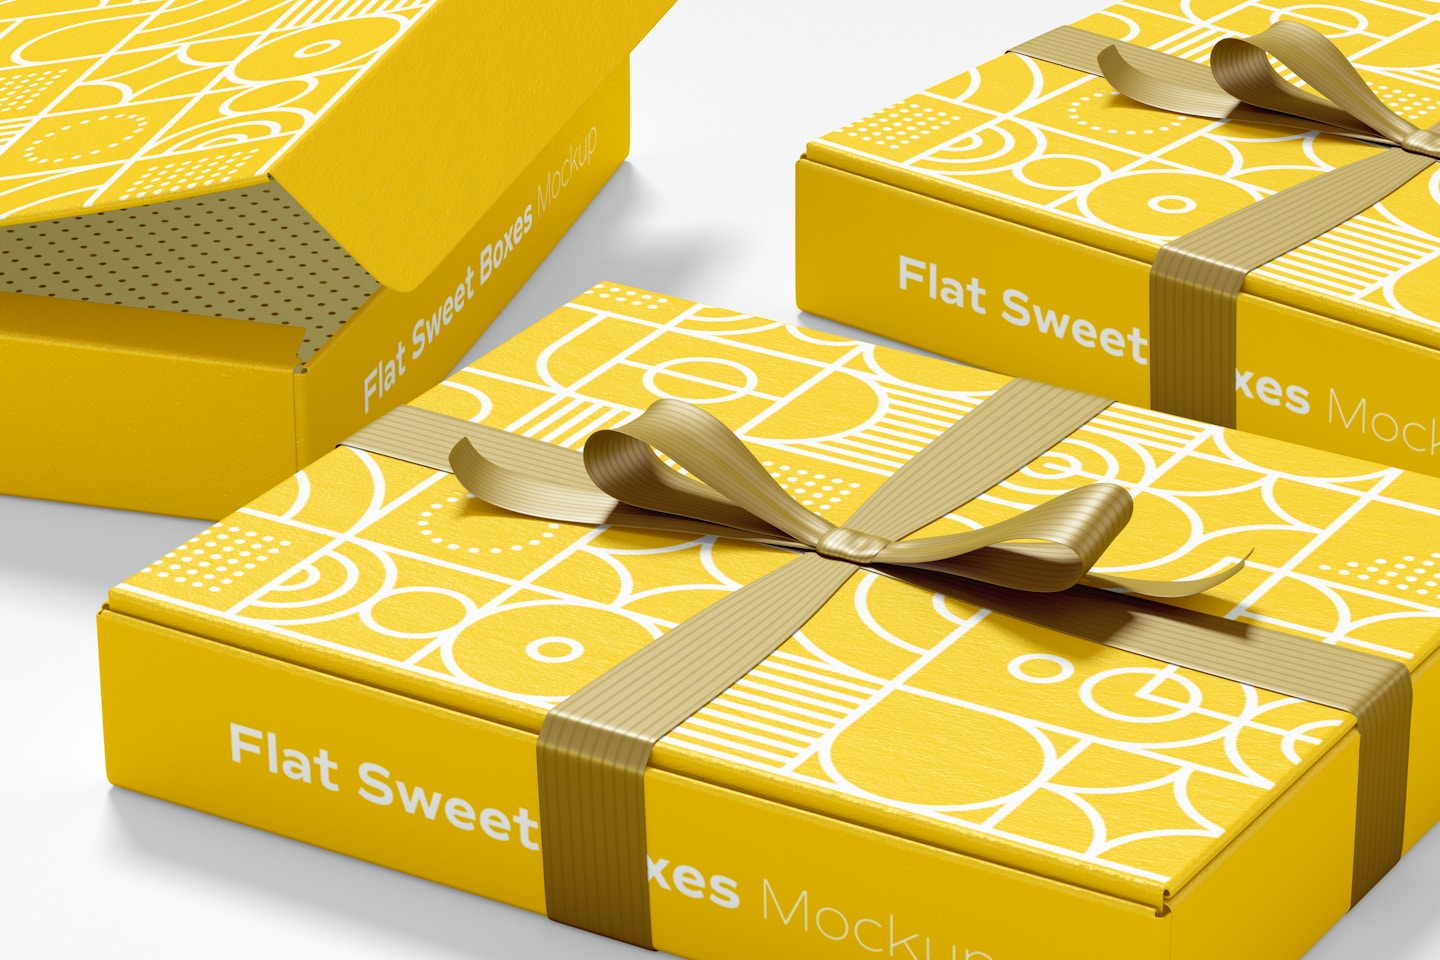 Flat Sweet Boxes with Ribbon Mockup, Close-Up